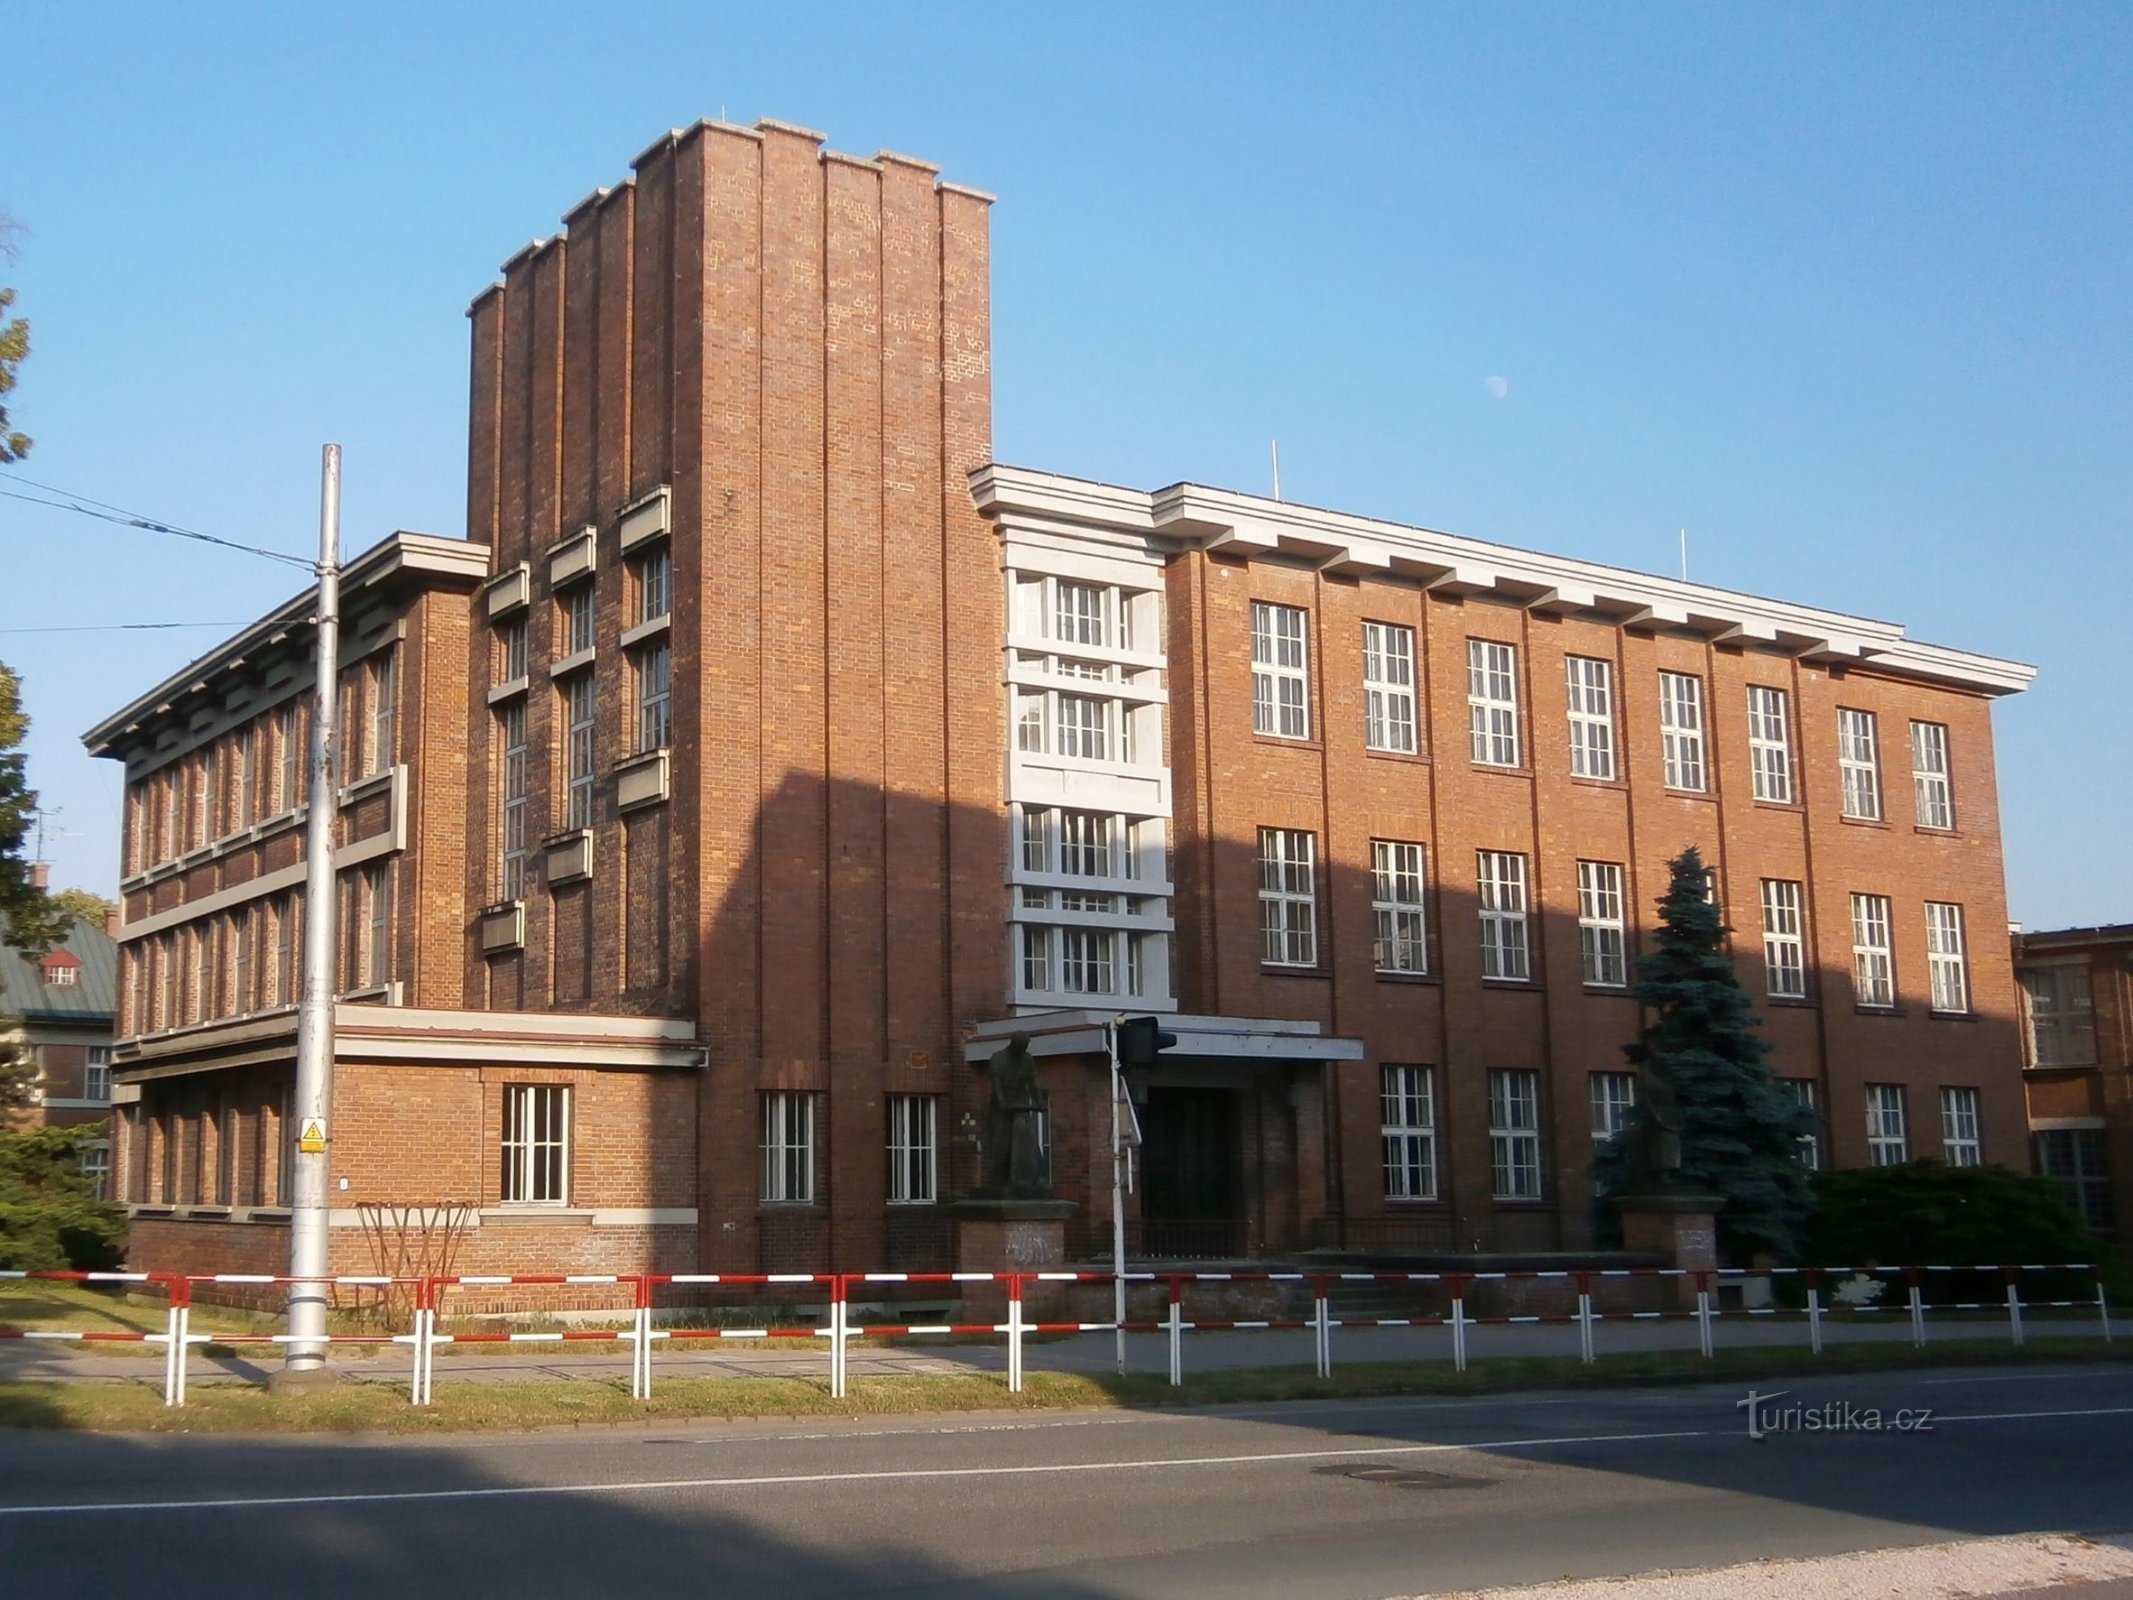 Volt bőrgyári iskola (Hradec Králové, 19.6.2013.)